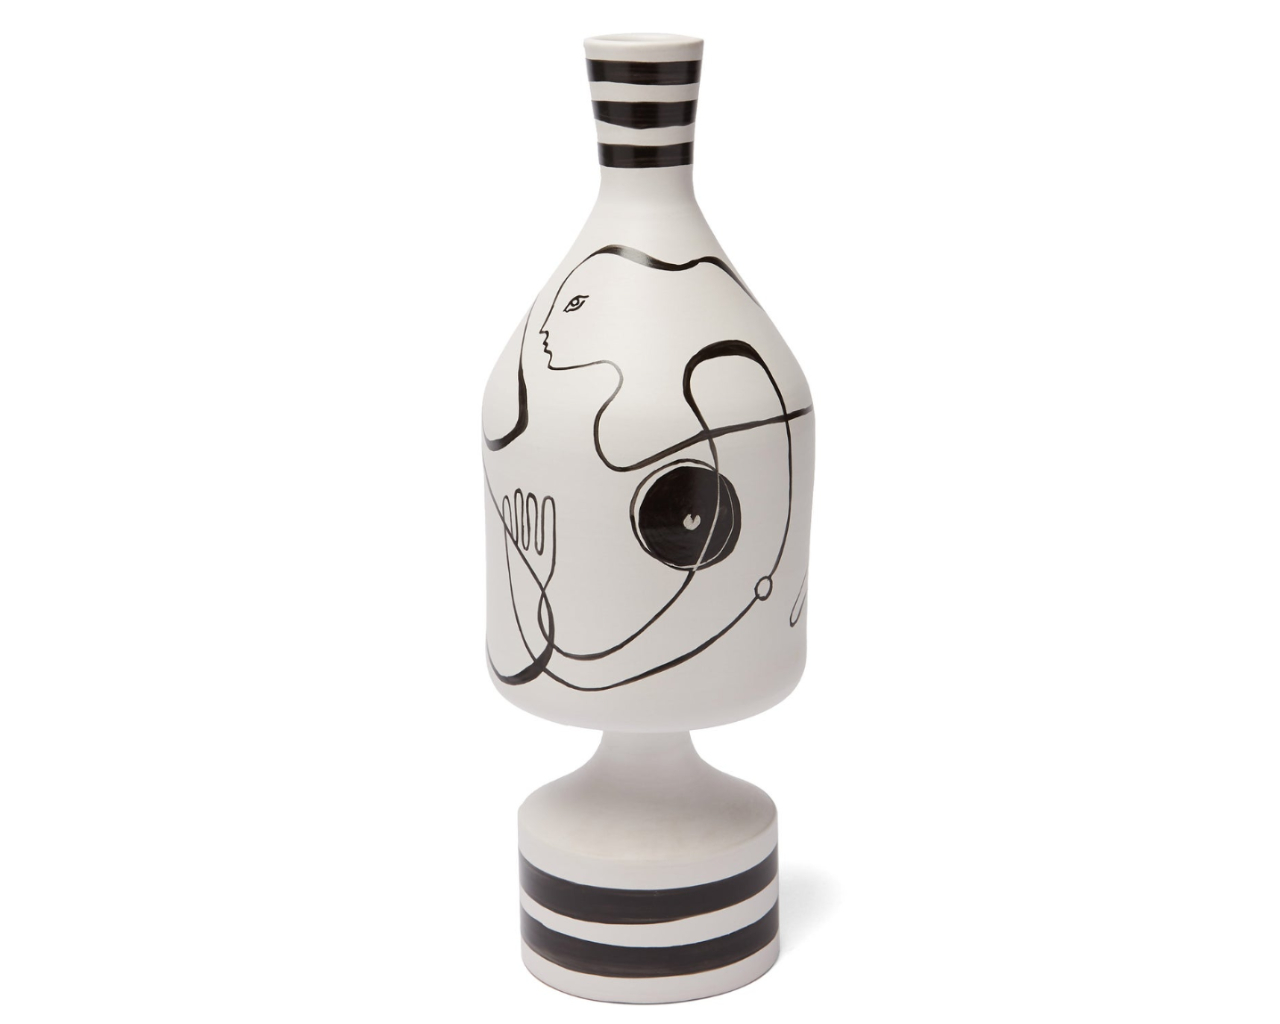 Nick Vinson Ceramic Vase 